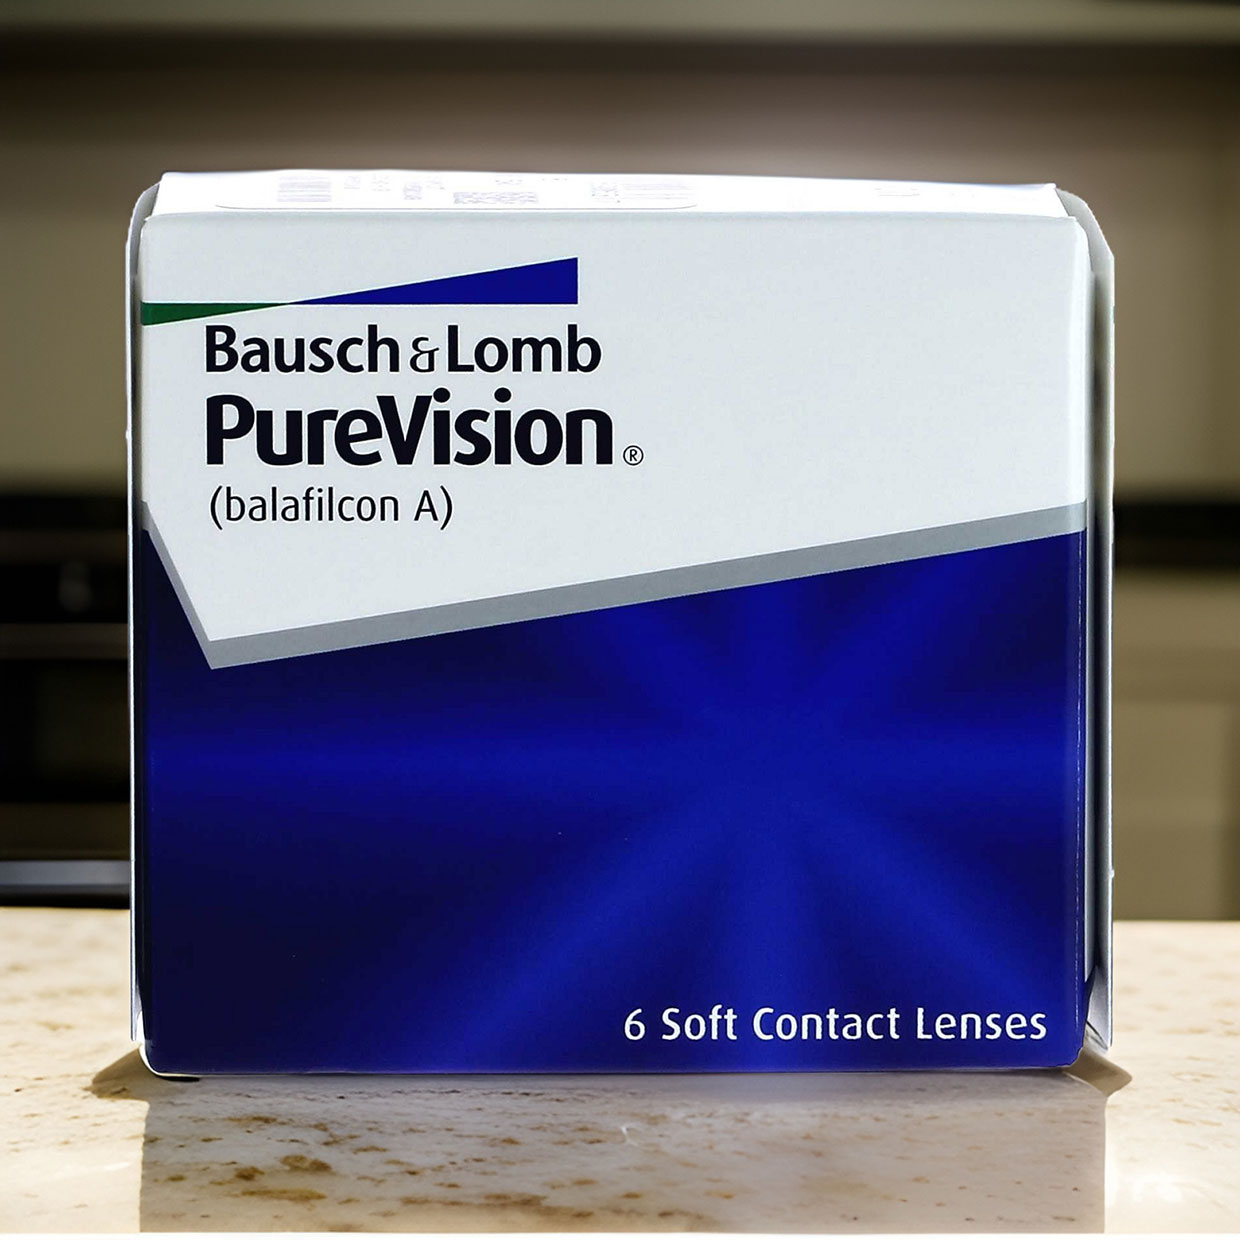 PureVision-piilolinssit tarjoavat poikkeuksellisen hyvän näönlaadun ja erinomaista kostuvuutta, joten ne voivat olla erinomainen 
kuukausilinssi myös kuivista silmistä kärsiville.